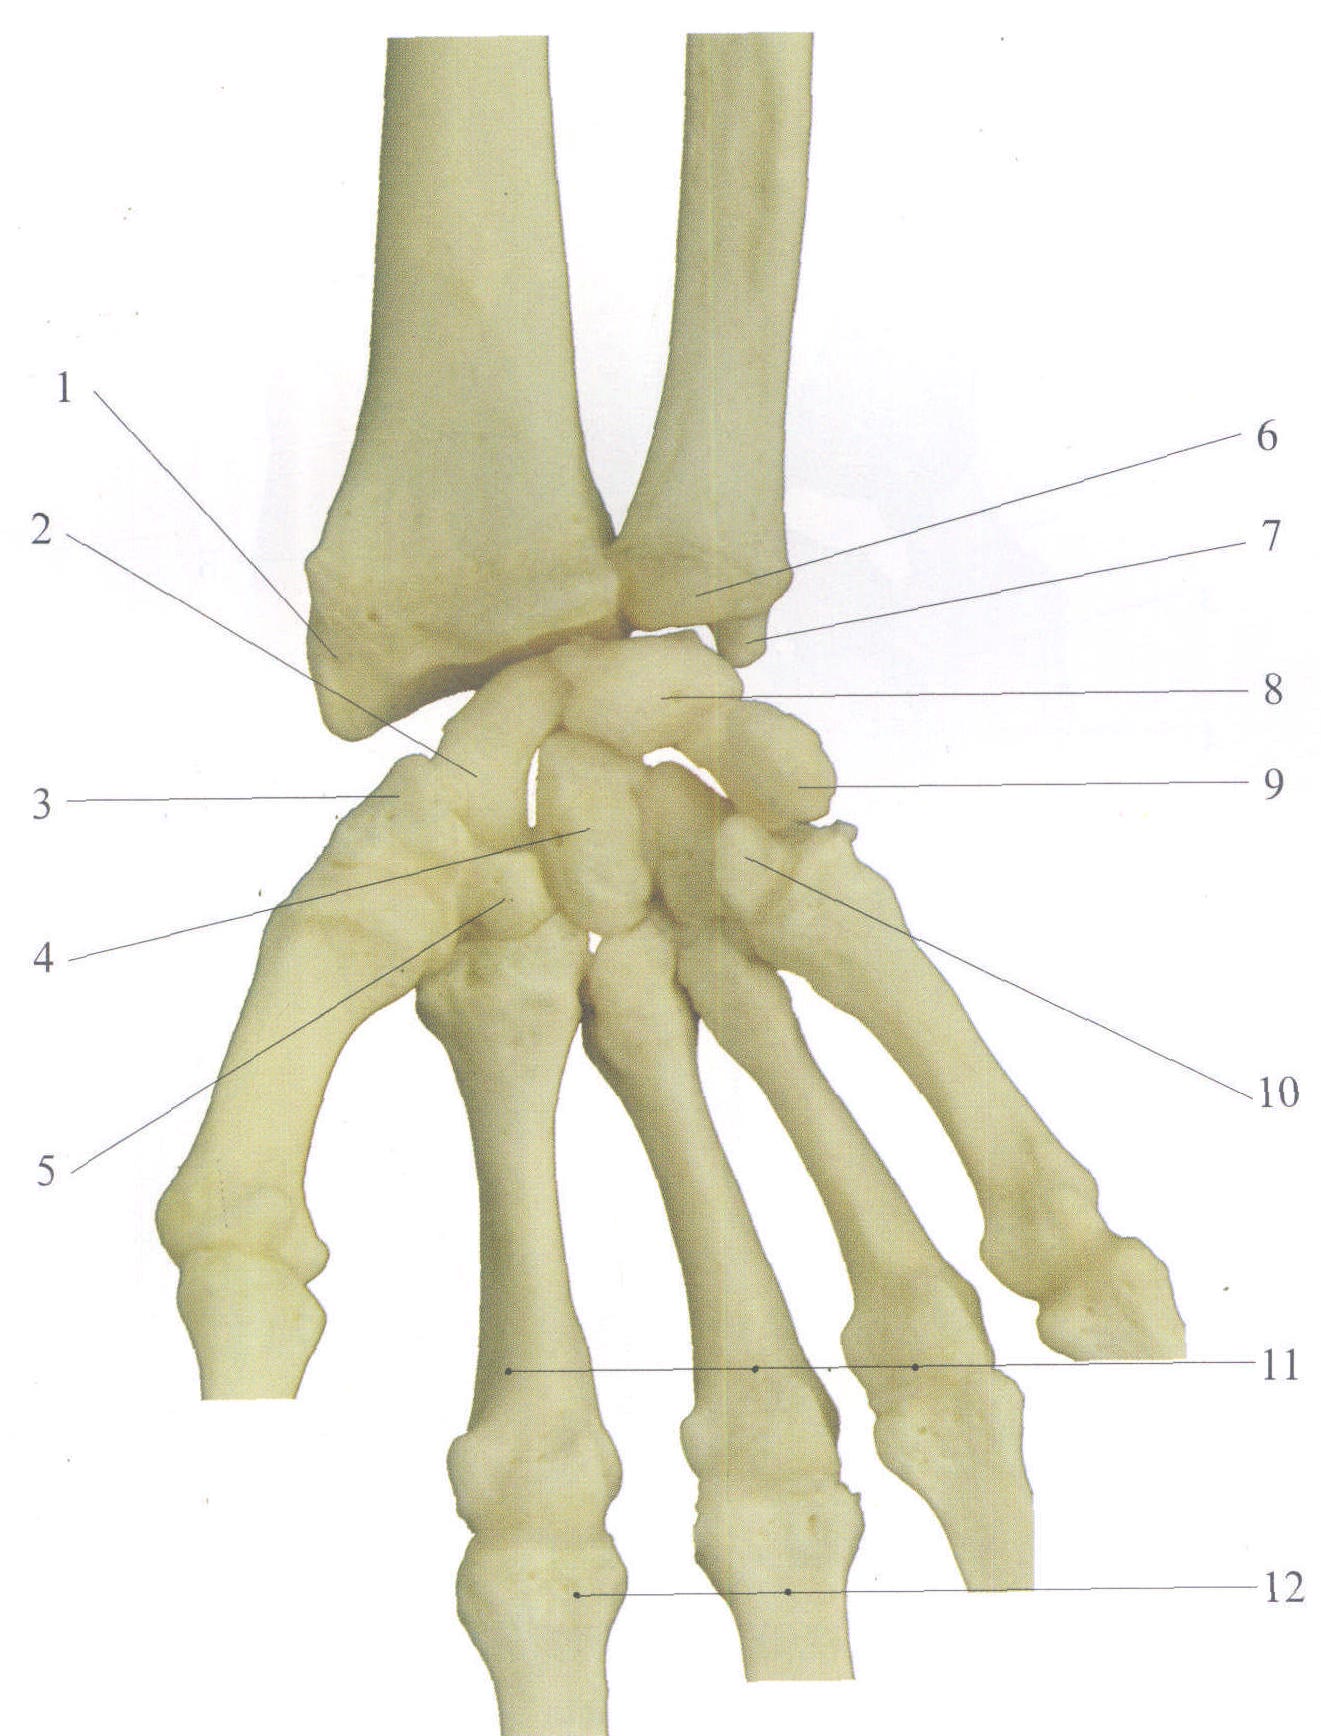 尺骨桡骨解剖图 素描图片